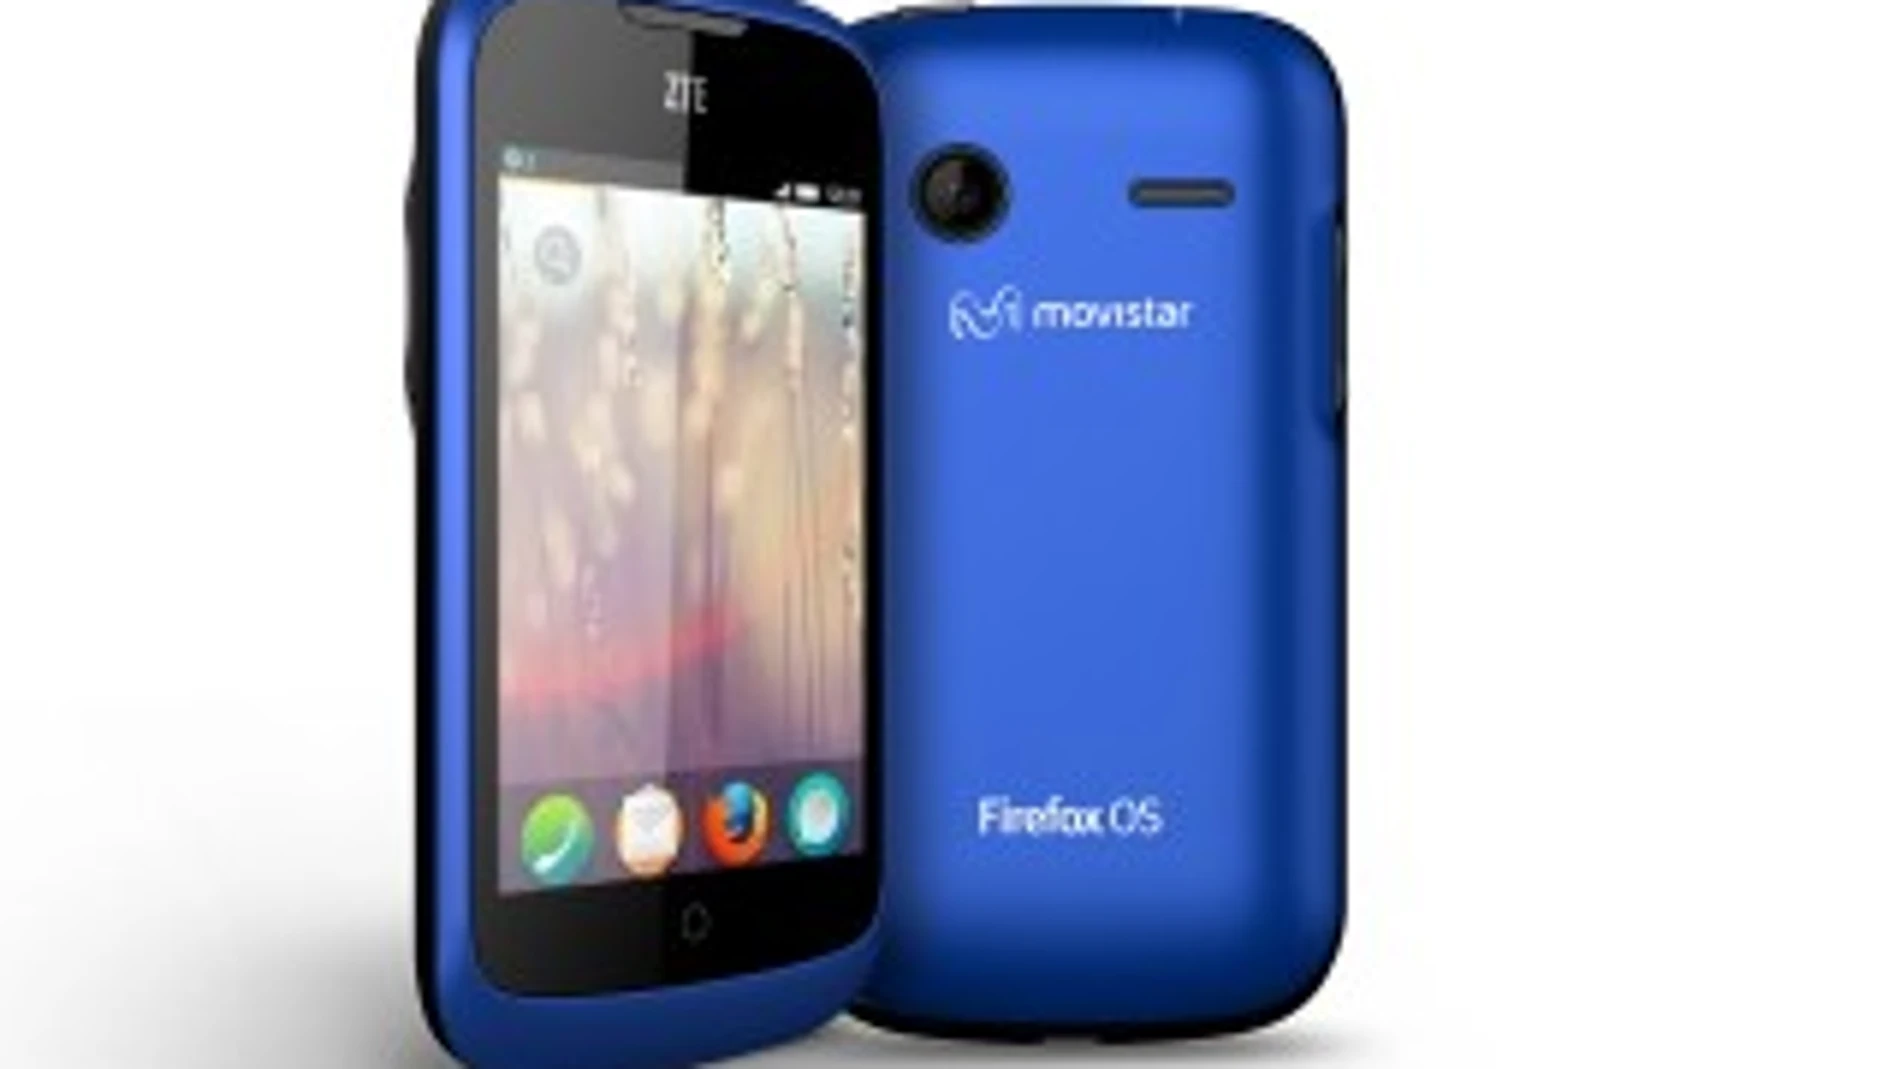 Imagen de un smartphone ZTE Open Blue de Movistar con el nuevo sistema operativo de Firefox